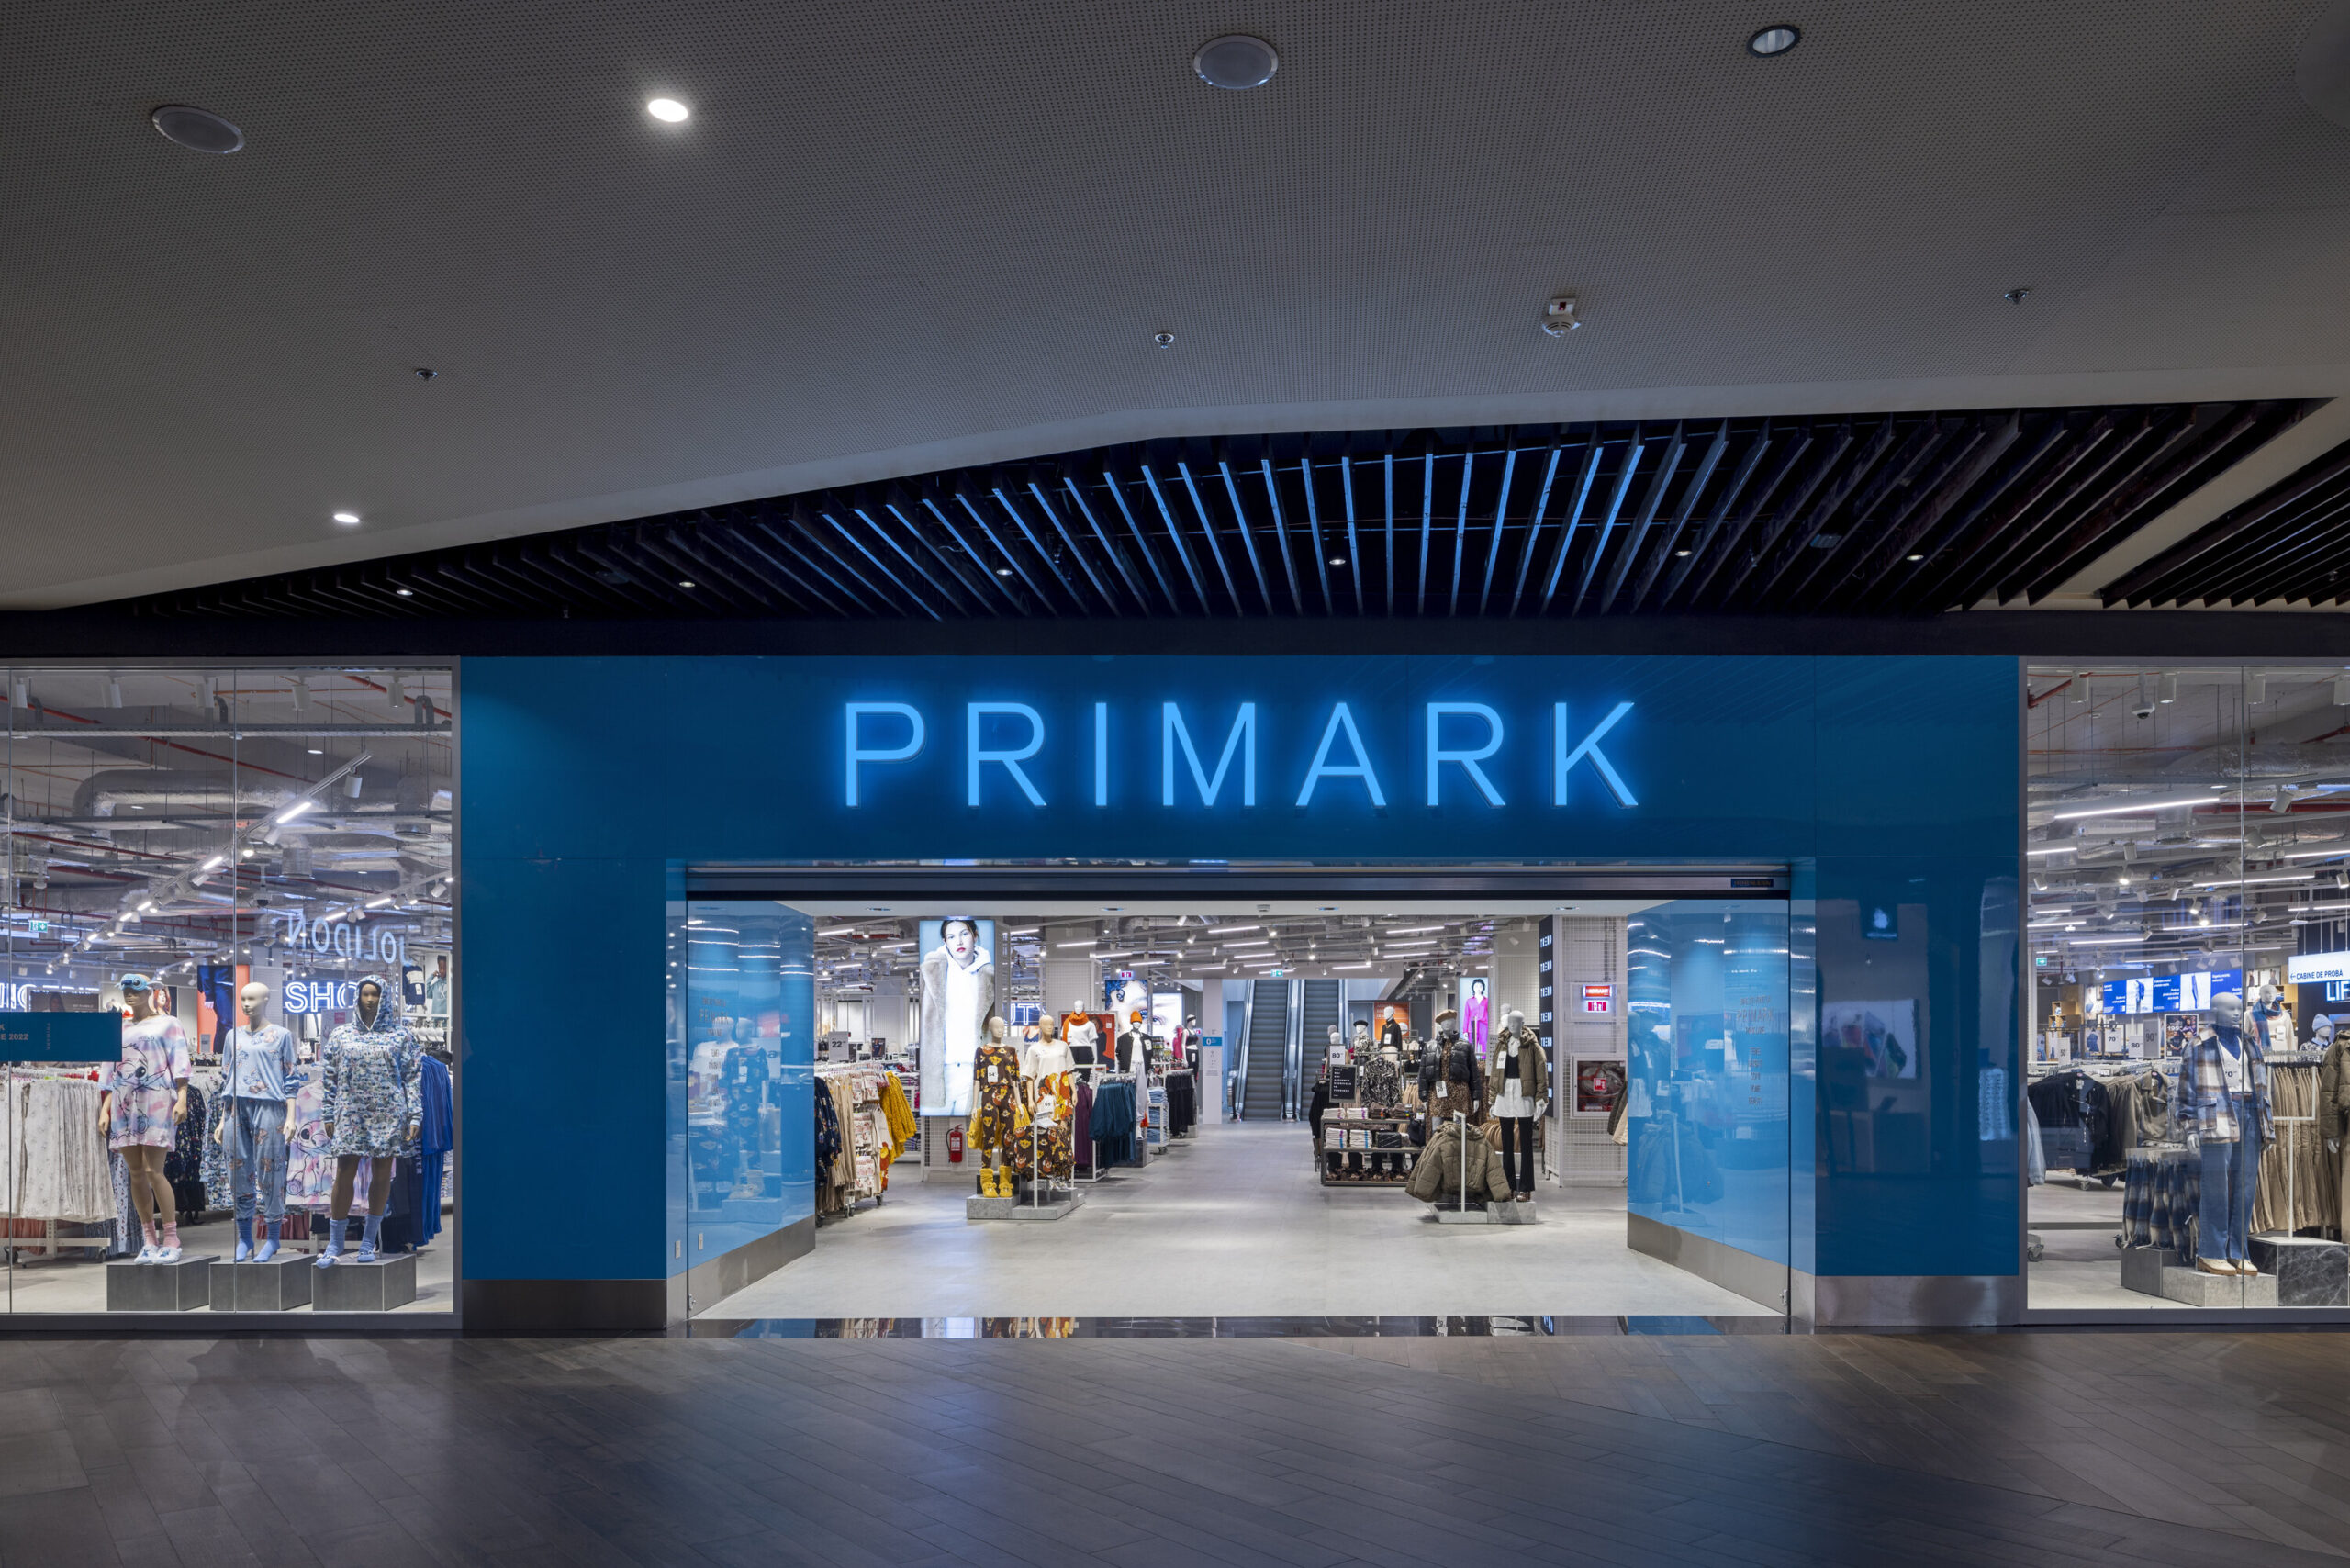 Primark, retailerul internațional de modă, a deschis astăzi primul magazin din România în centrul comercial ParkLake